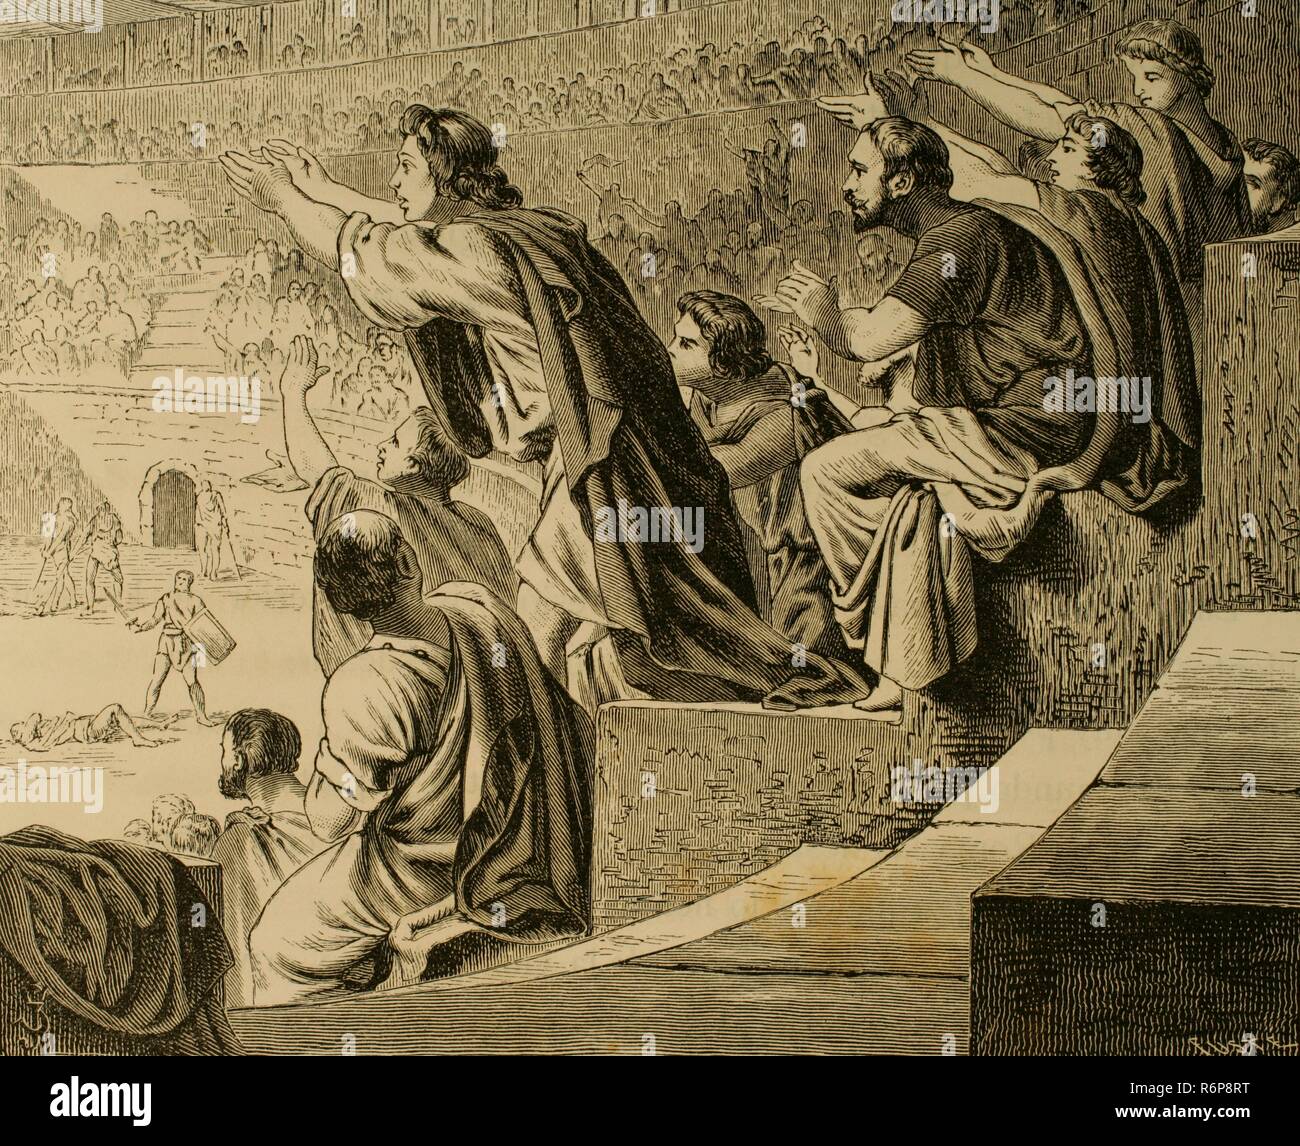 Römische Reich. Zuschauer während eines Gladiator kämpfen. Gravur. La Civilizacion (der Zivilisation), Band II, 1881. Stockfoto